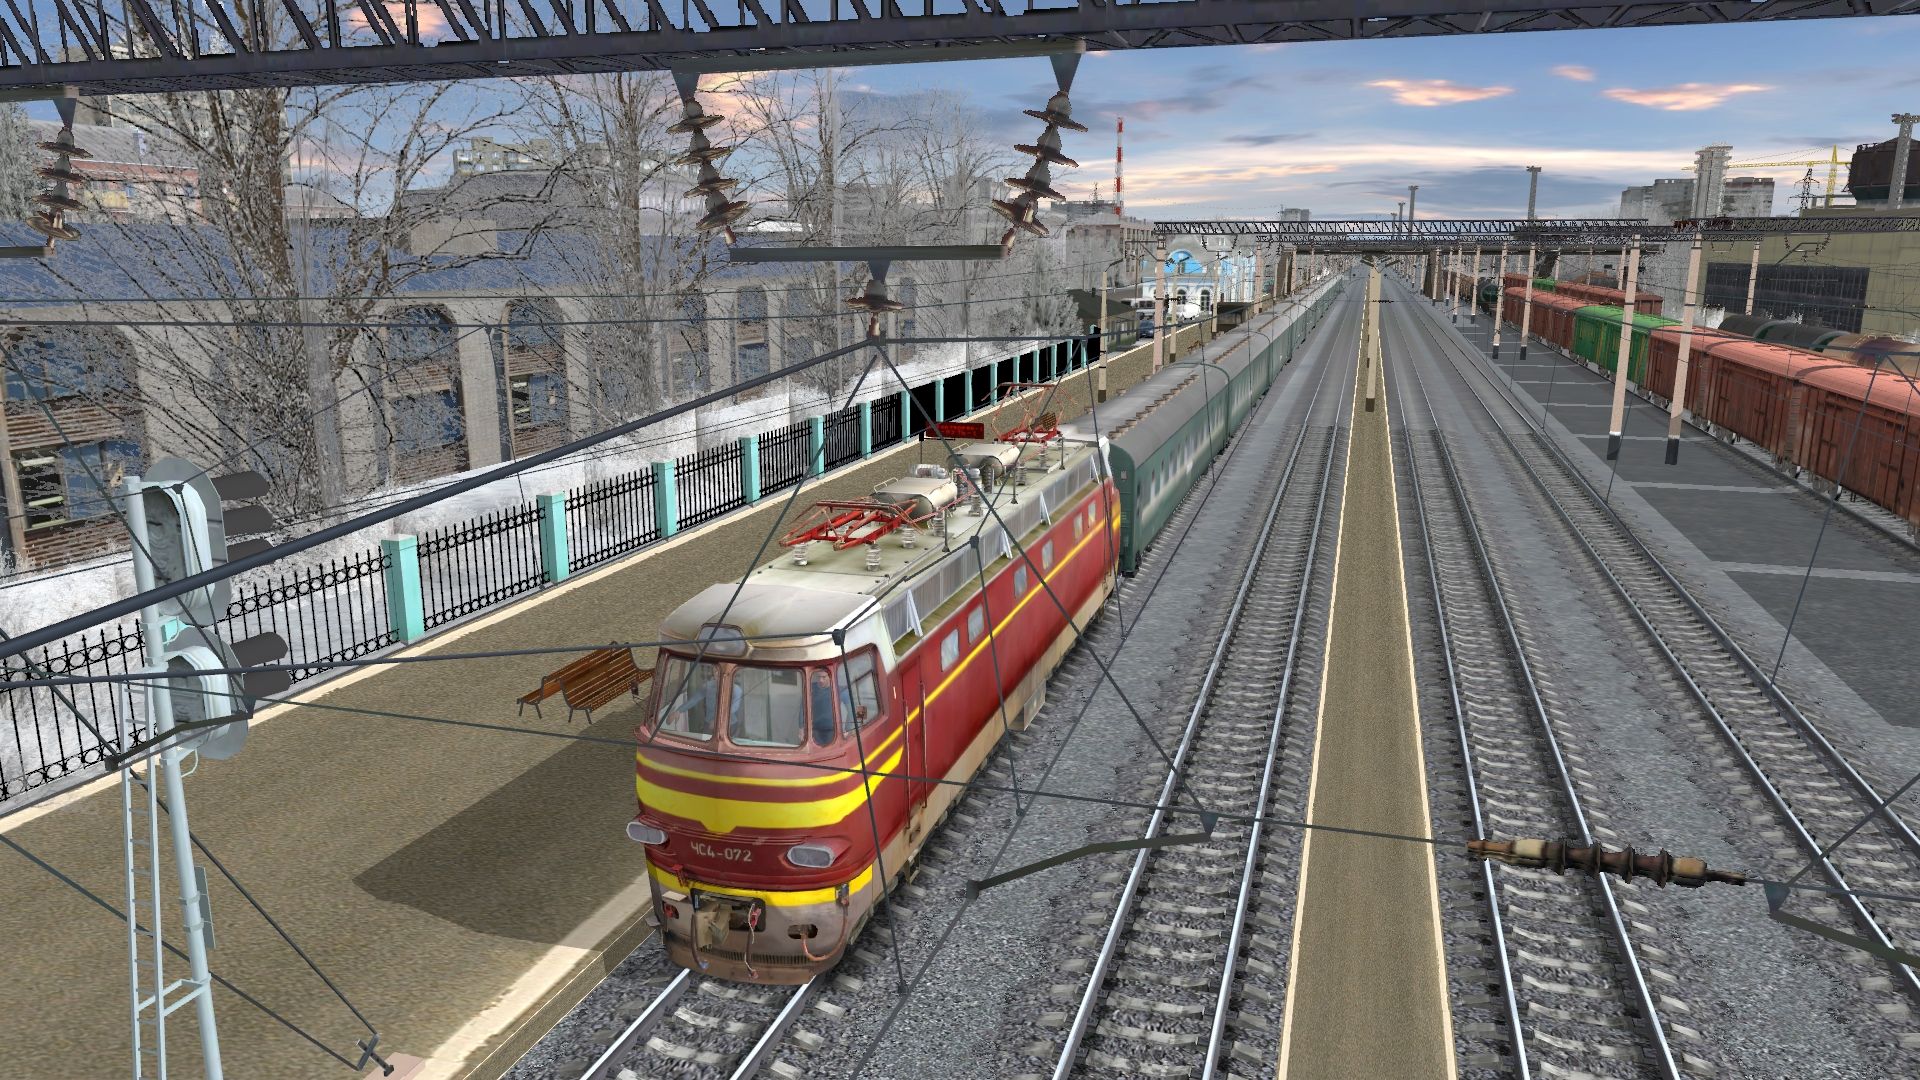 Digitizeu train simulator